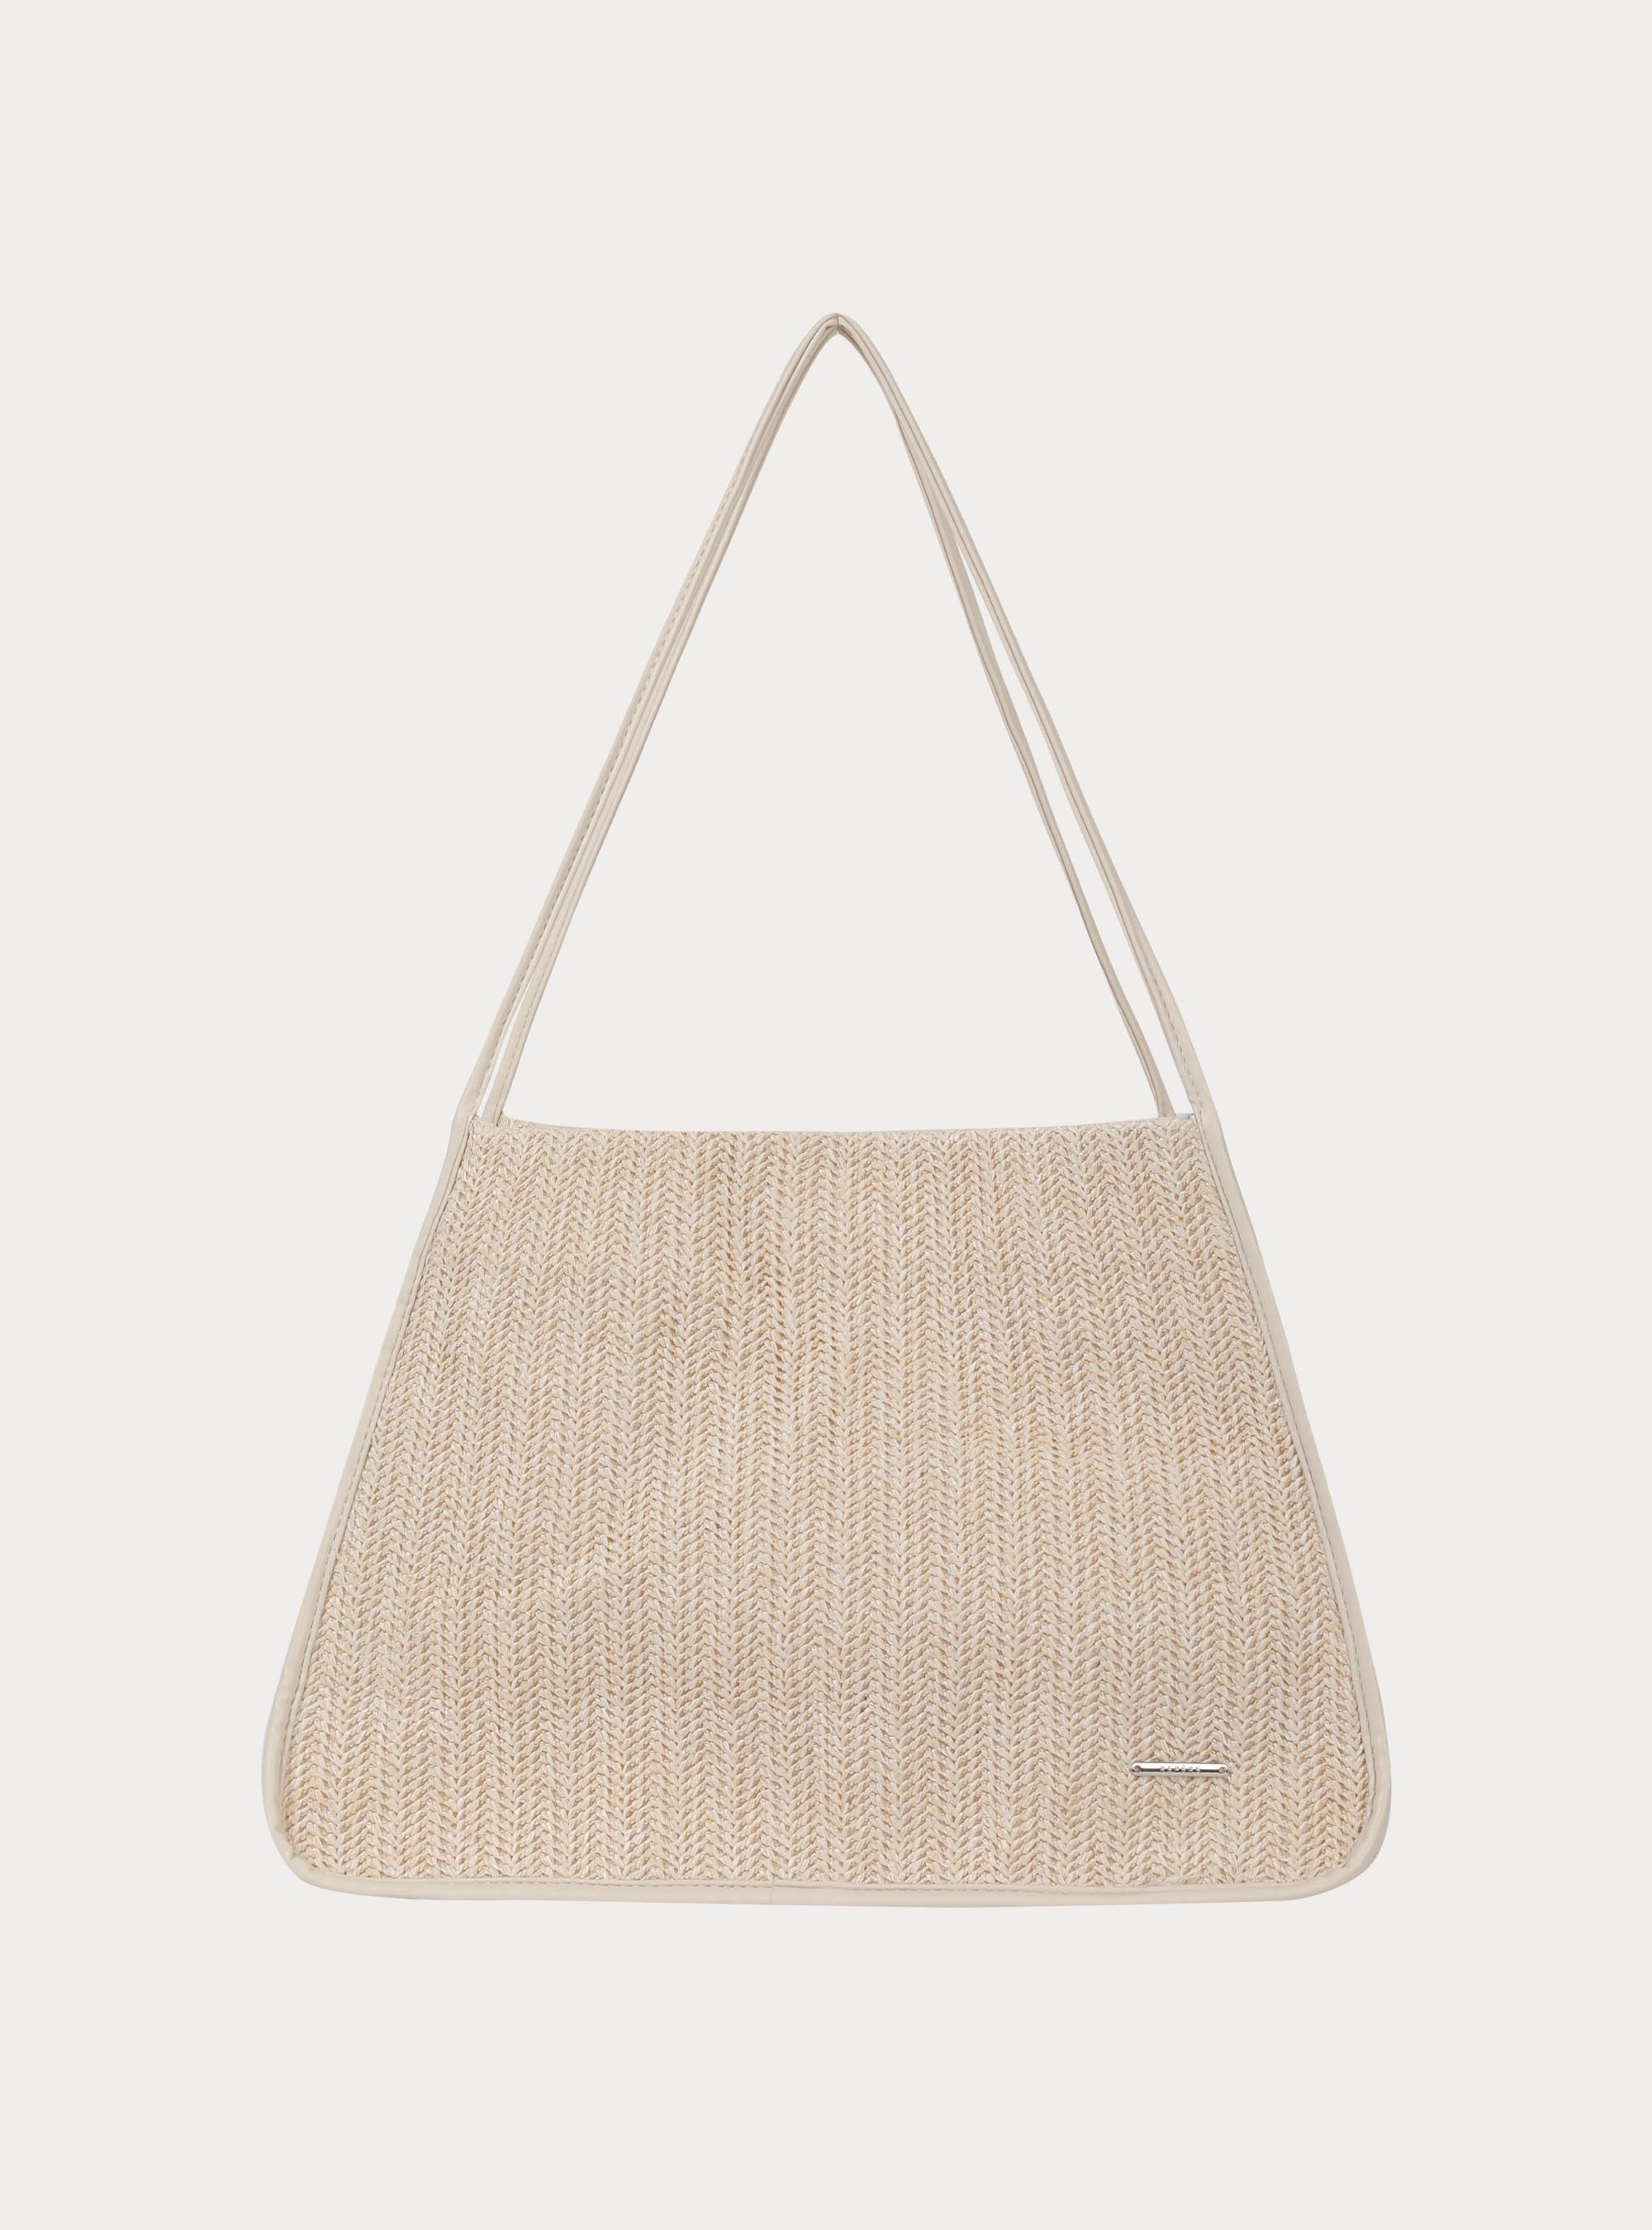 이그리트 라탄 토트백 크림  Ygritte rattan tote bag (1color)